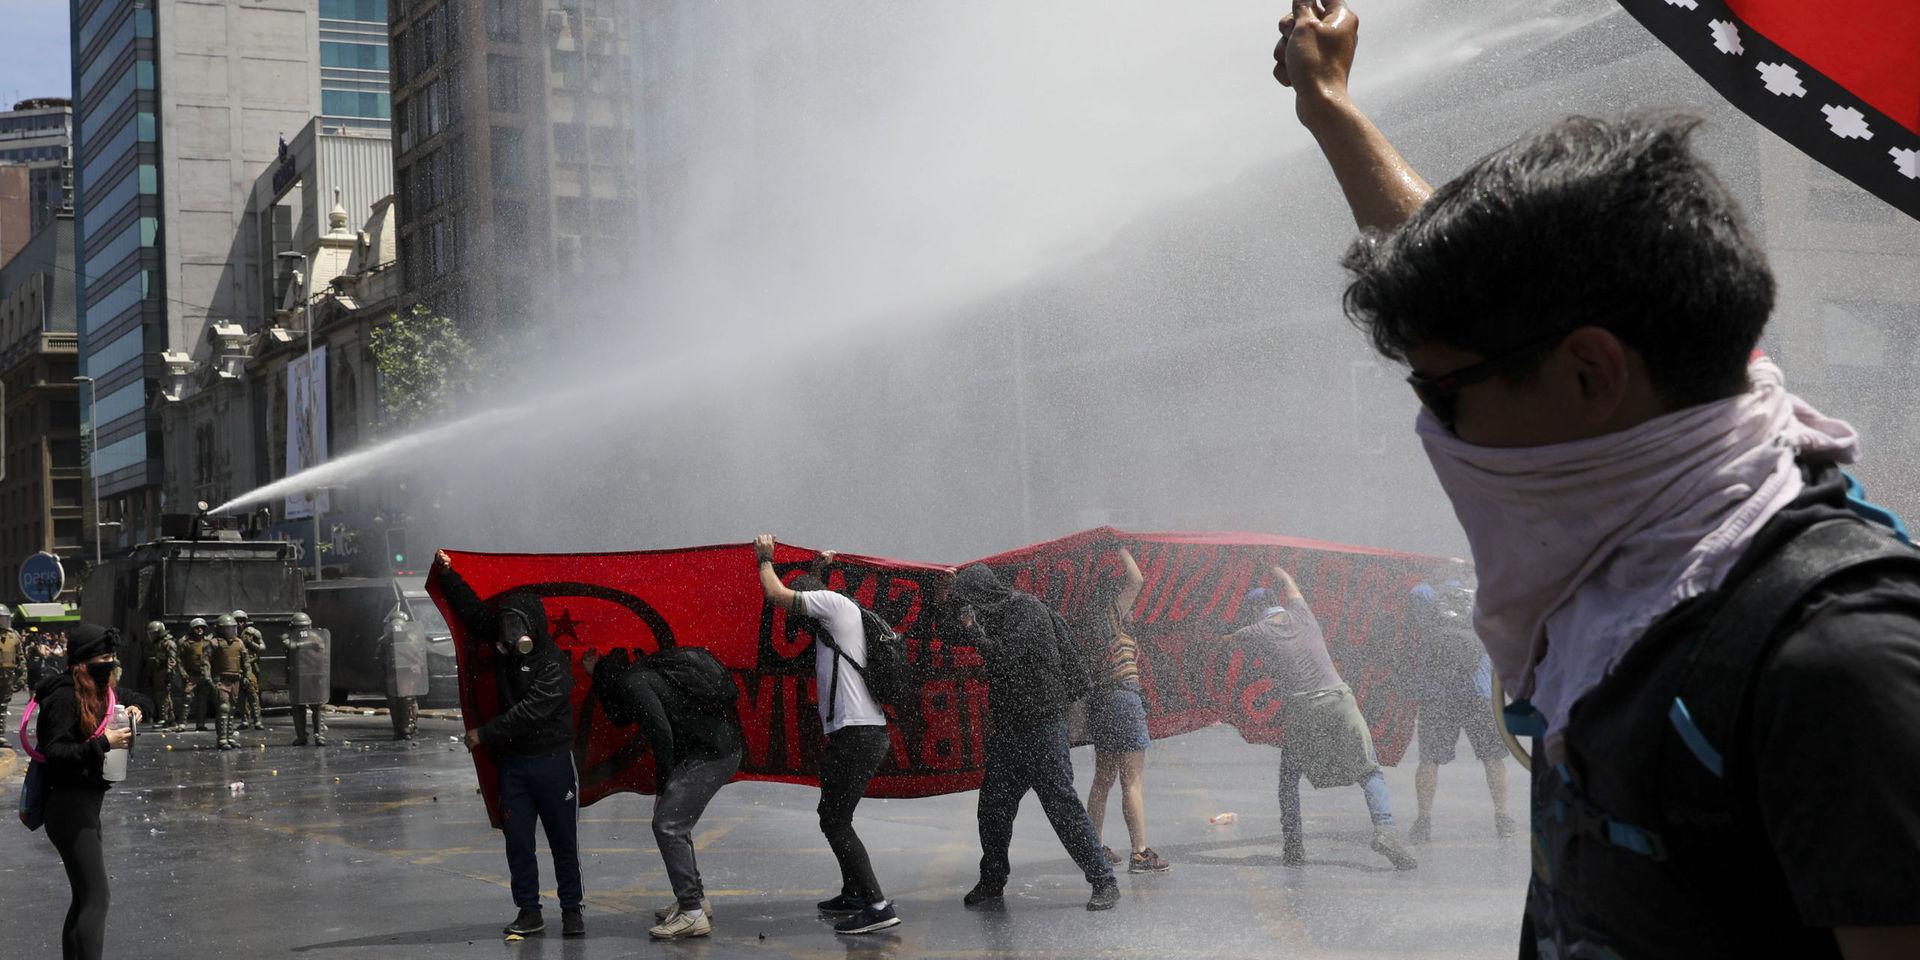 Även om onsdagens protester var lugnare än tidigare sattes vattenkanoner in mot demonstranter i Chiles huvudstad Santiago.